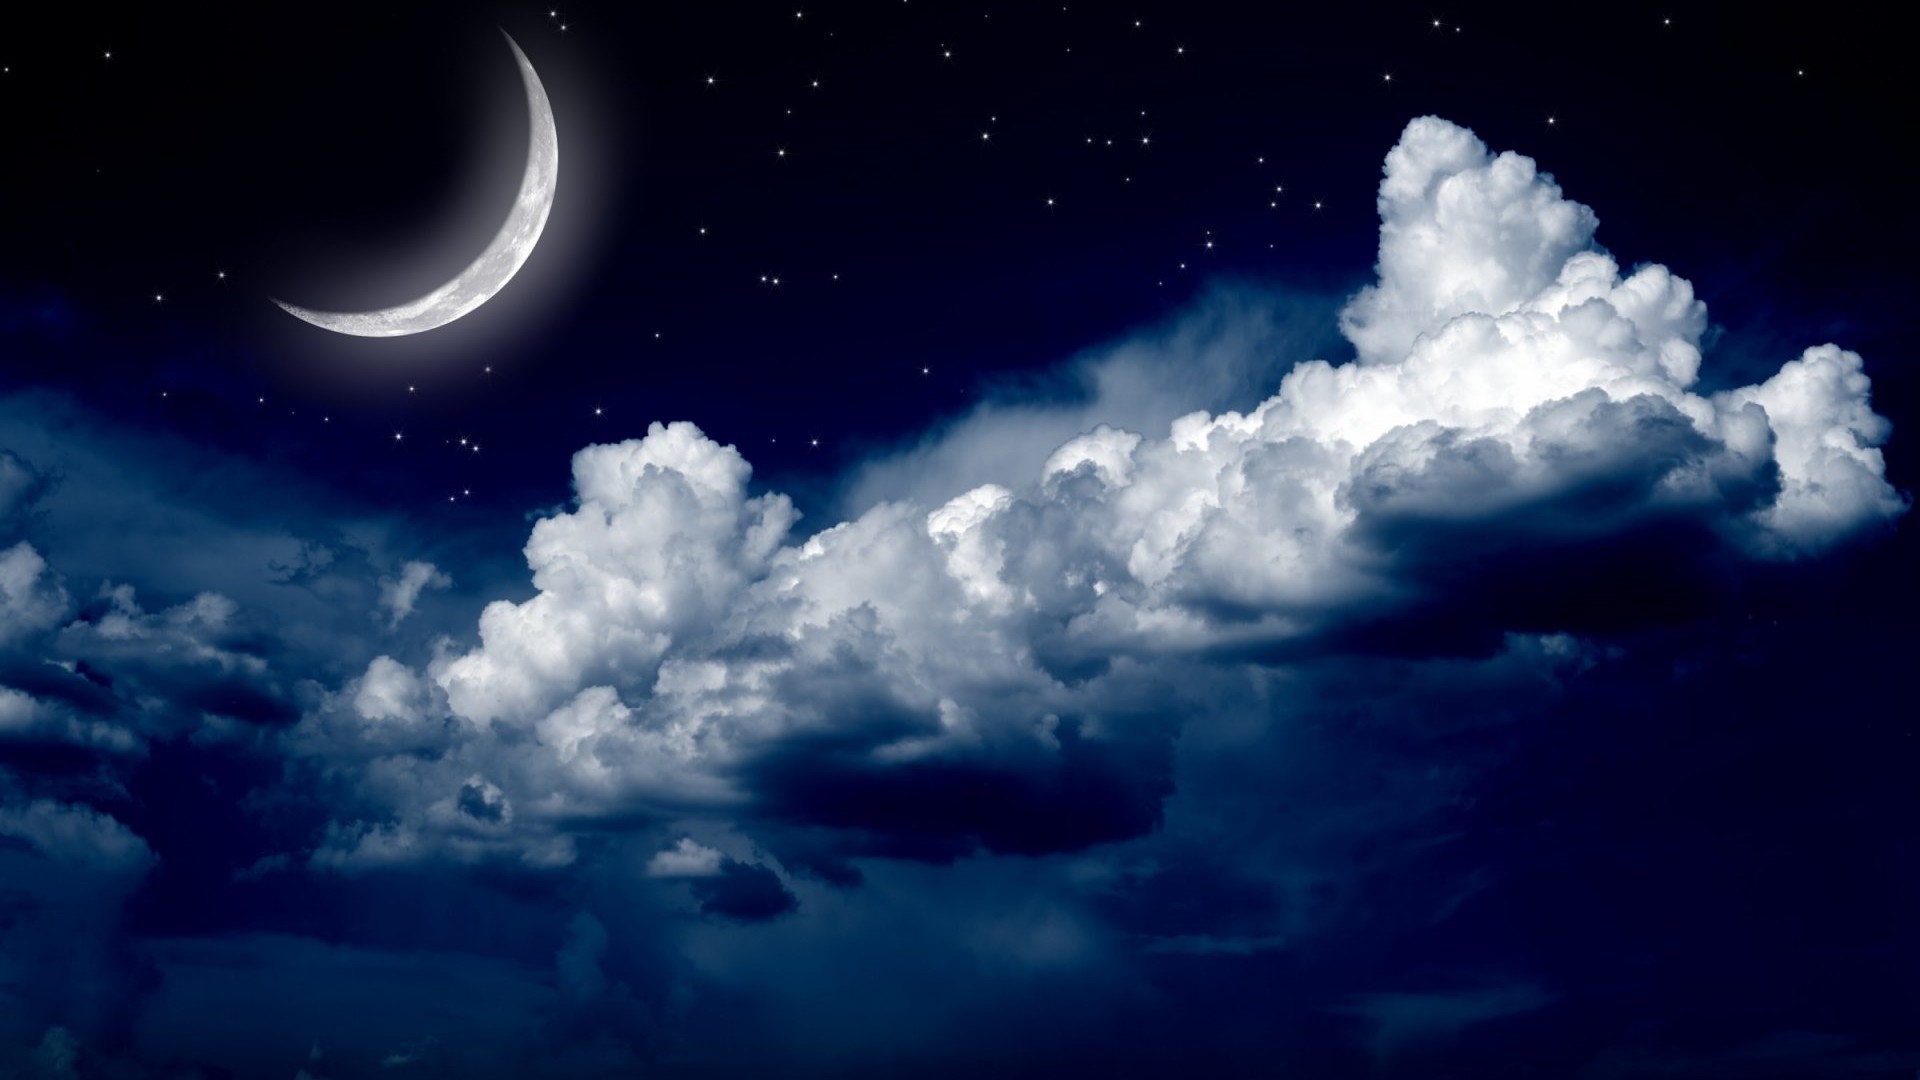 Скачать обои бесплатно Небо, Звезды, Ночь, Облака, Луна, Звездное Небо, Земля/природа картинка на рабочий стол ПК